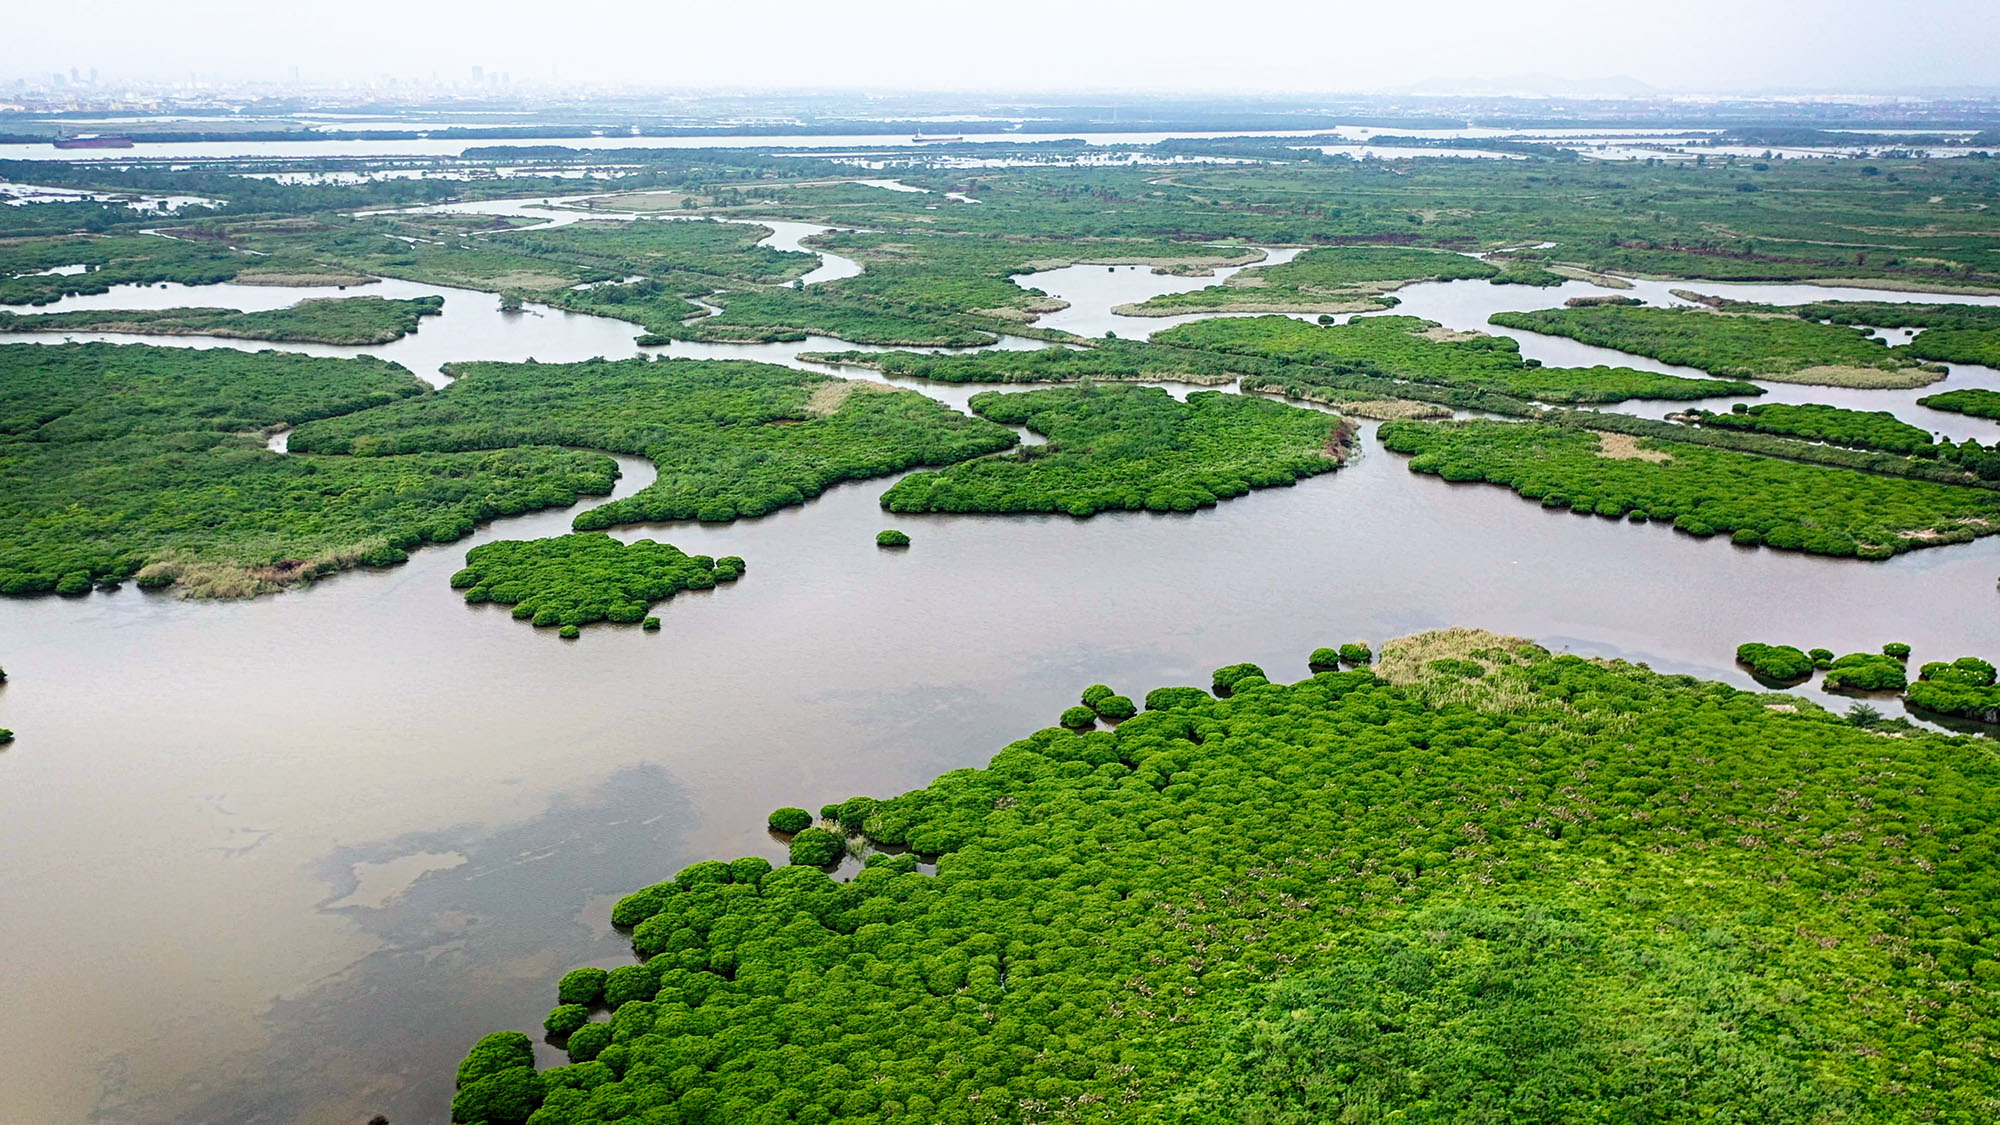 rừng ngập mặn (mangrove forest): Rừng ngập mặn không chỉ mang lại khung cảnh đẹp mắt mà còn đóng vai trò quan trọng trong sinh thái học. Rừng ngập mặn đã và đang bảo vệ các vùng ven biển tránh được tác động của xoáy bão và là nơi sinh sống của rất nhiều loài động thực vật quý hiếm. Hãy khám phá hình ảnh này và để đắm mình vào không gian yên tĩnh của rừng ngập mặn.